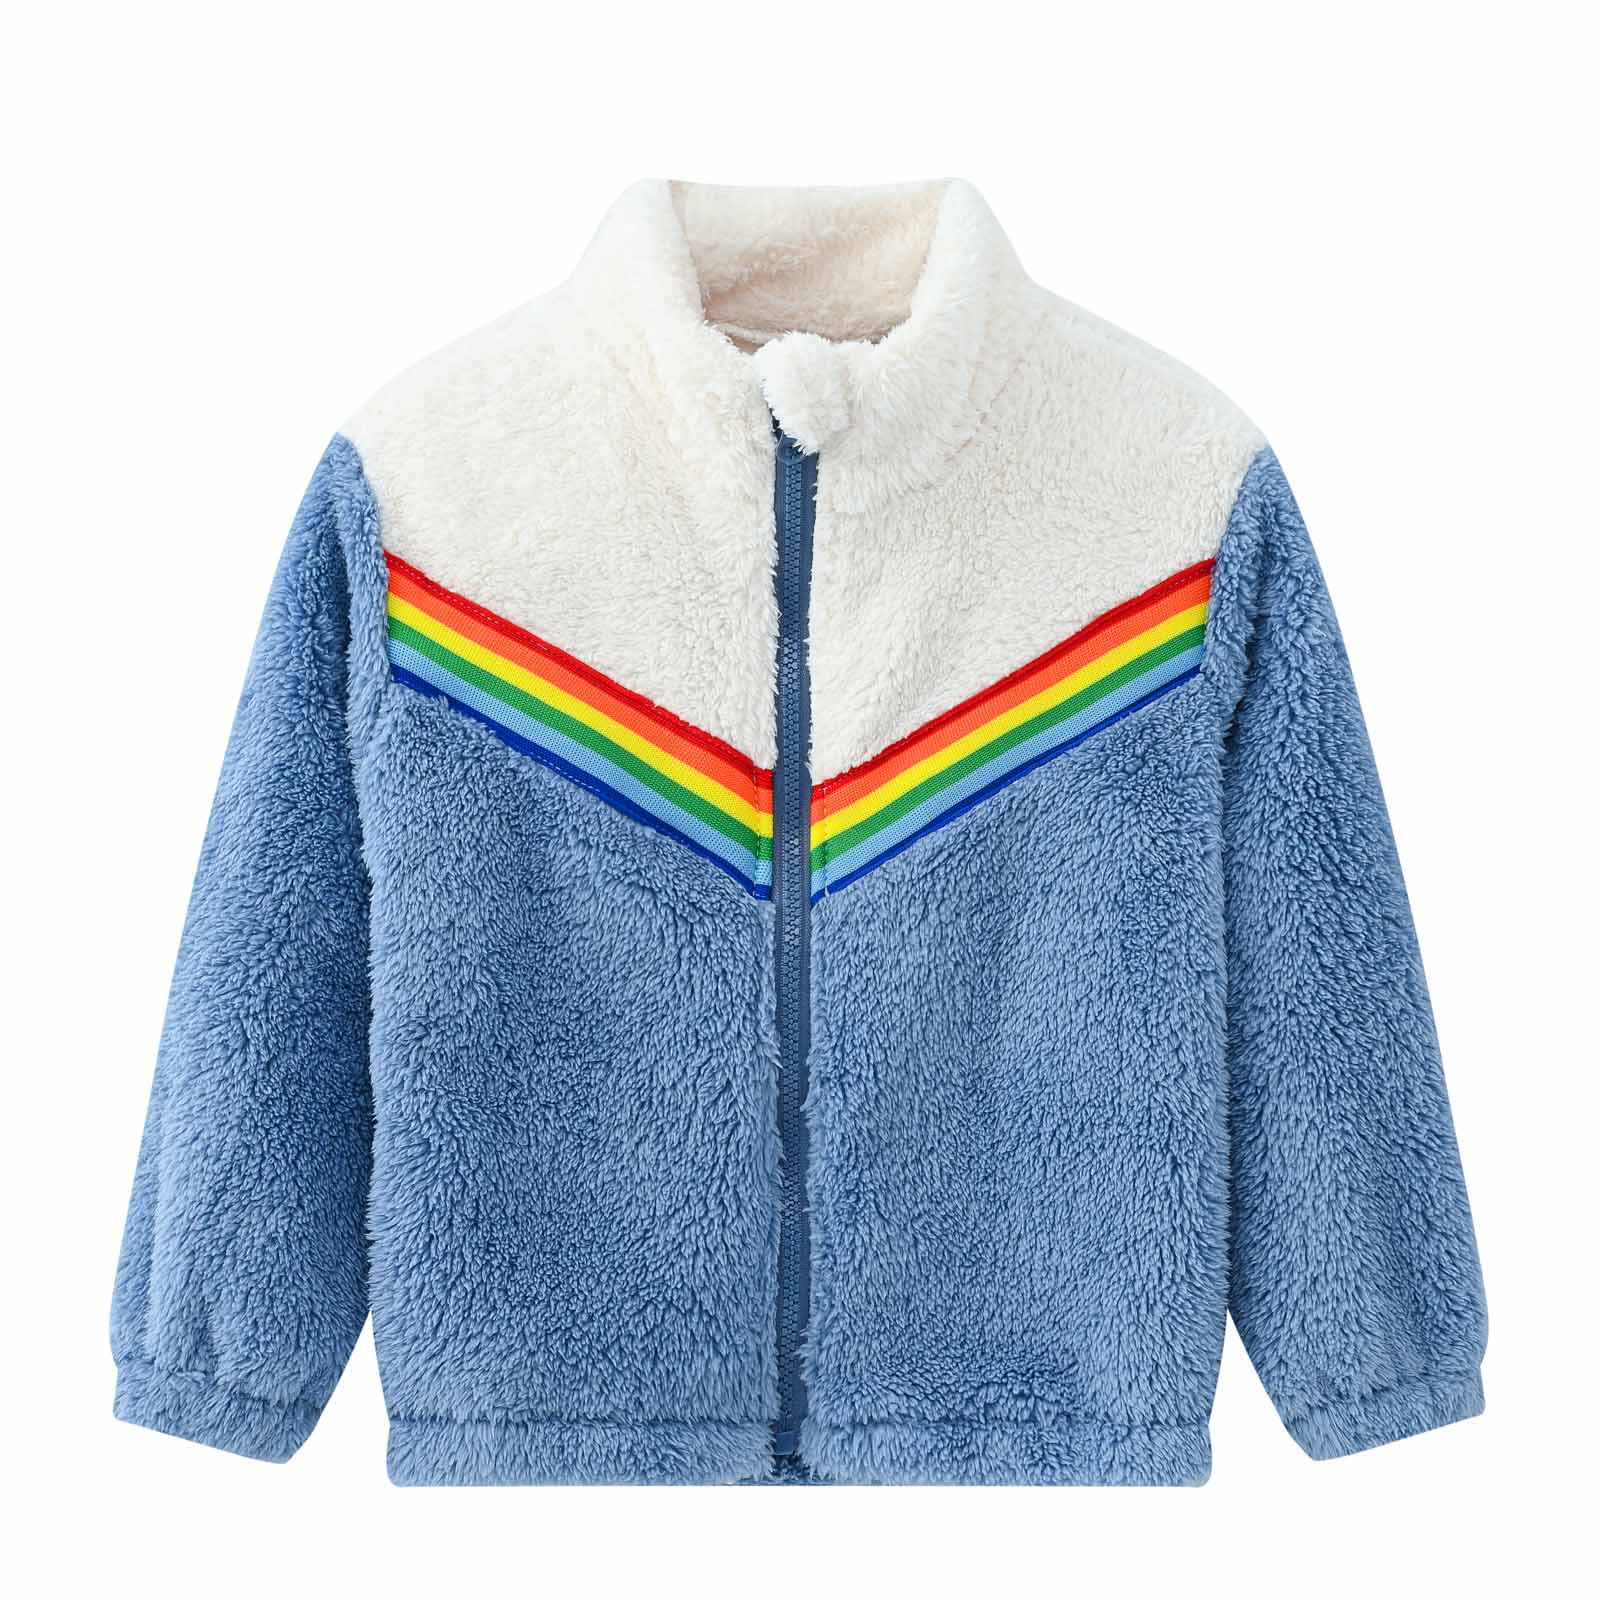 YYDGH Girls Zipper Jacket Fuzzy Sweatshirt Long Sleeve Casual Cozy Fleece Sherpa Outwear Coat Full-Zip Rainbow Jackets(Blue,5-6 Years) - image 1 of 8